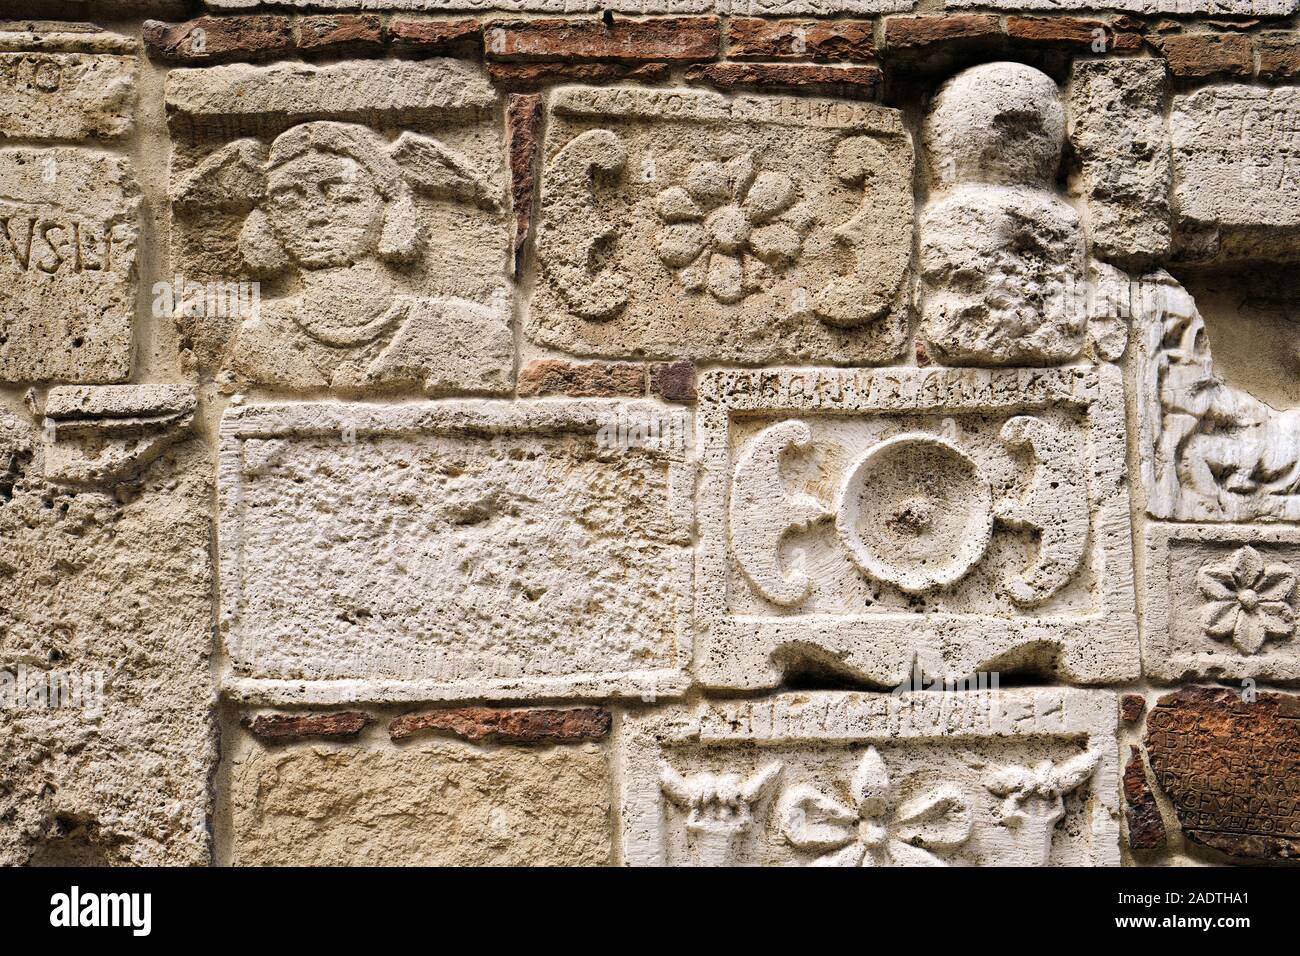 Etrusca y Romana De piedra tallar relieves en el Palacio Bucelli bajorrelieve en la cima del pueblo histórico de Montepulciano Toscana Italia UE Foto de stock